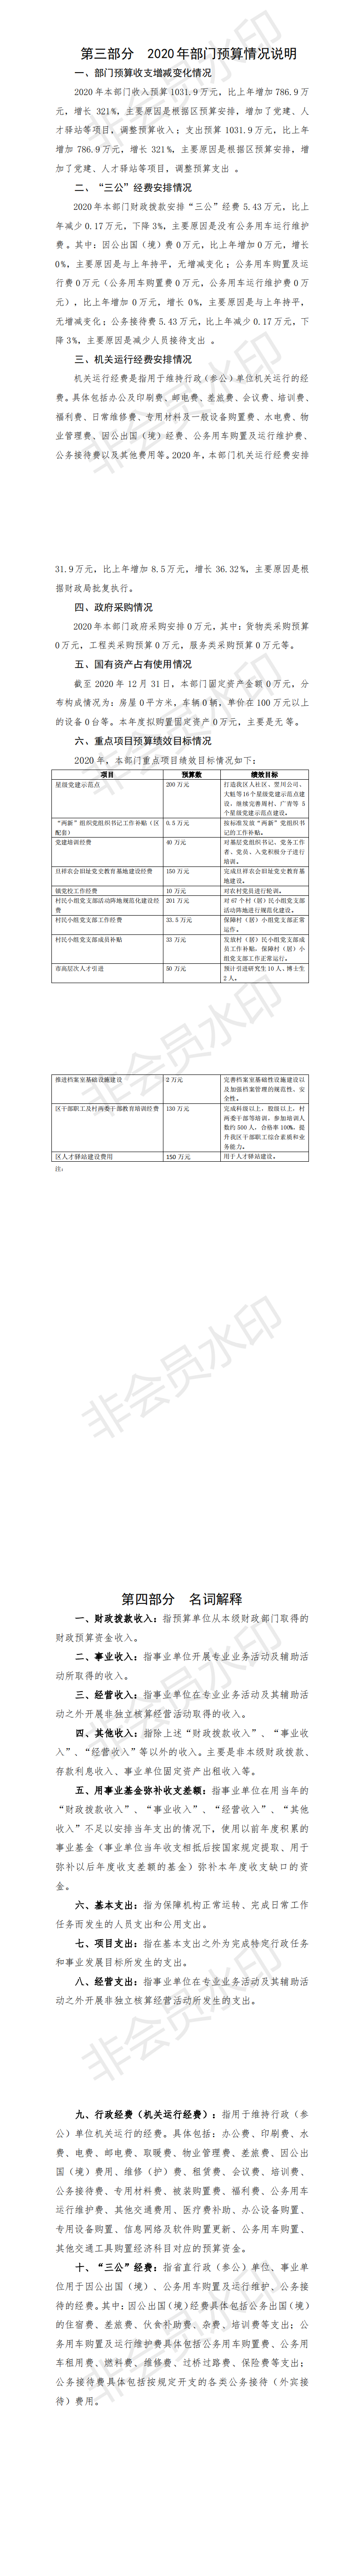 2020年中国共产党阳江高新技术产业开发区委员会组织部部门预算(1)_1.png